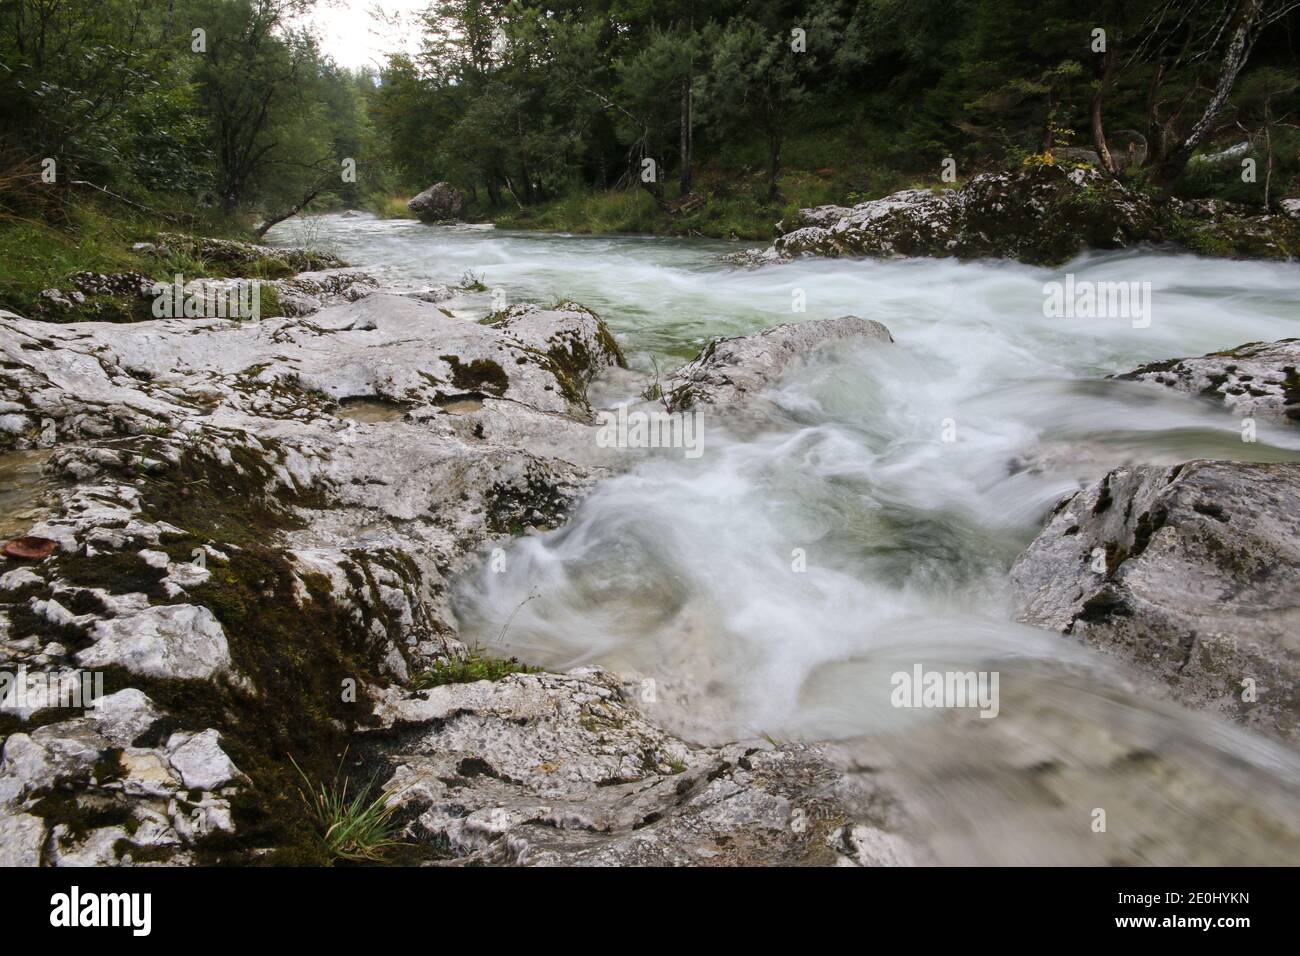 Rocks in wild mountain river Mostnica, Voje Valley, Bohinj, Slovenia Stock Photo